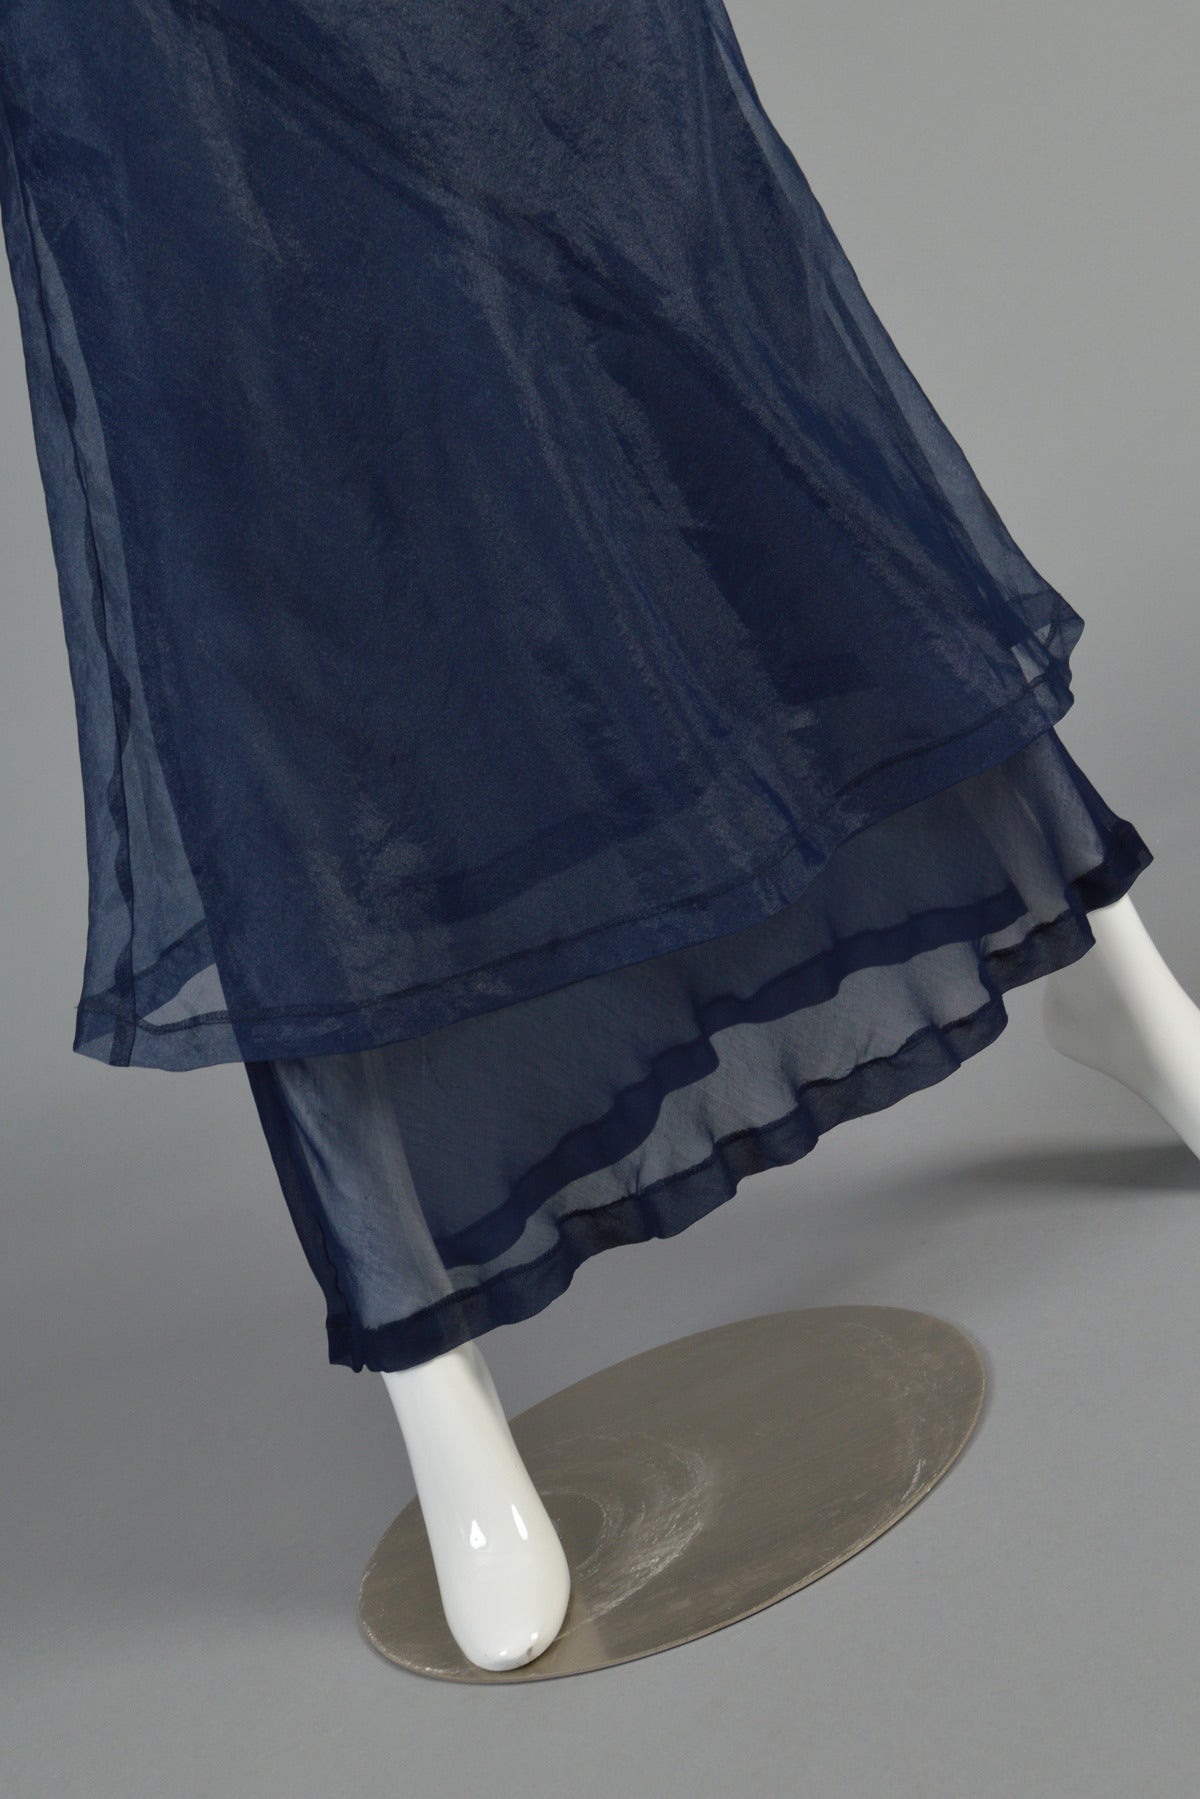 Women's A/D 1997 Comme des Garcons Bi-Level Maxi Skirt